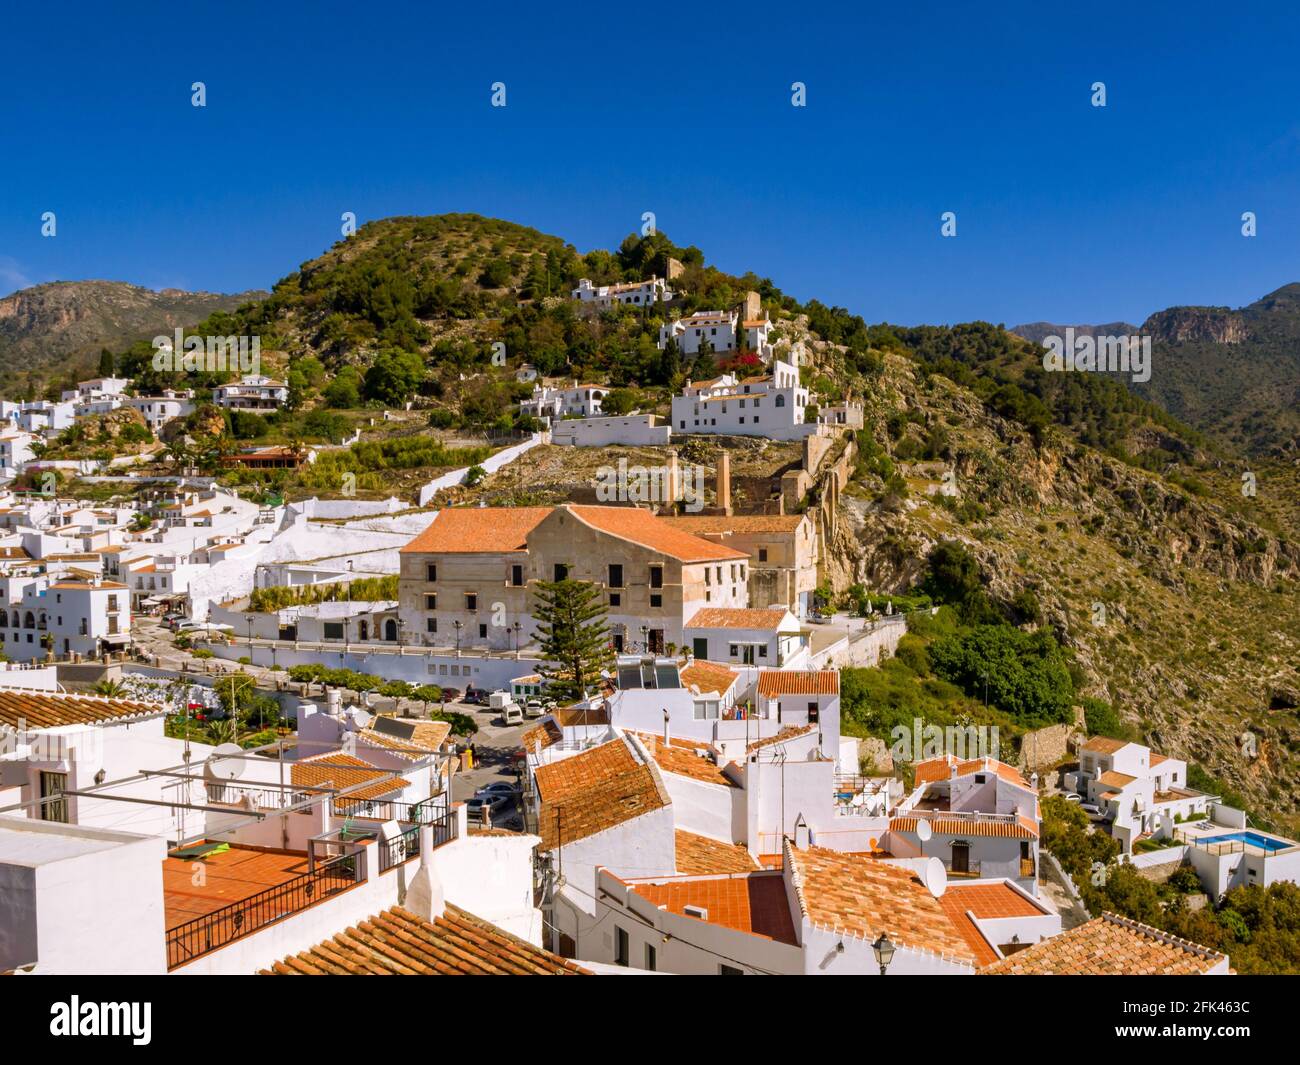 La place de la ville et les montagnes de Frigiliana en Andalousie Espagne Banque D'Images